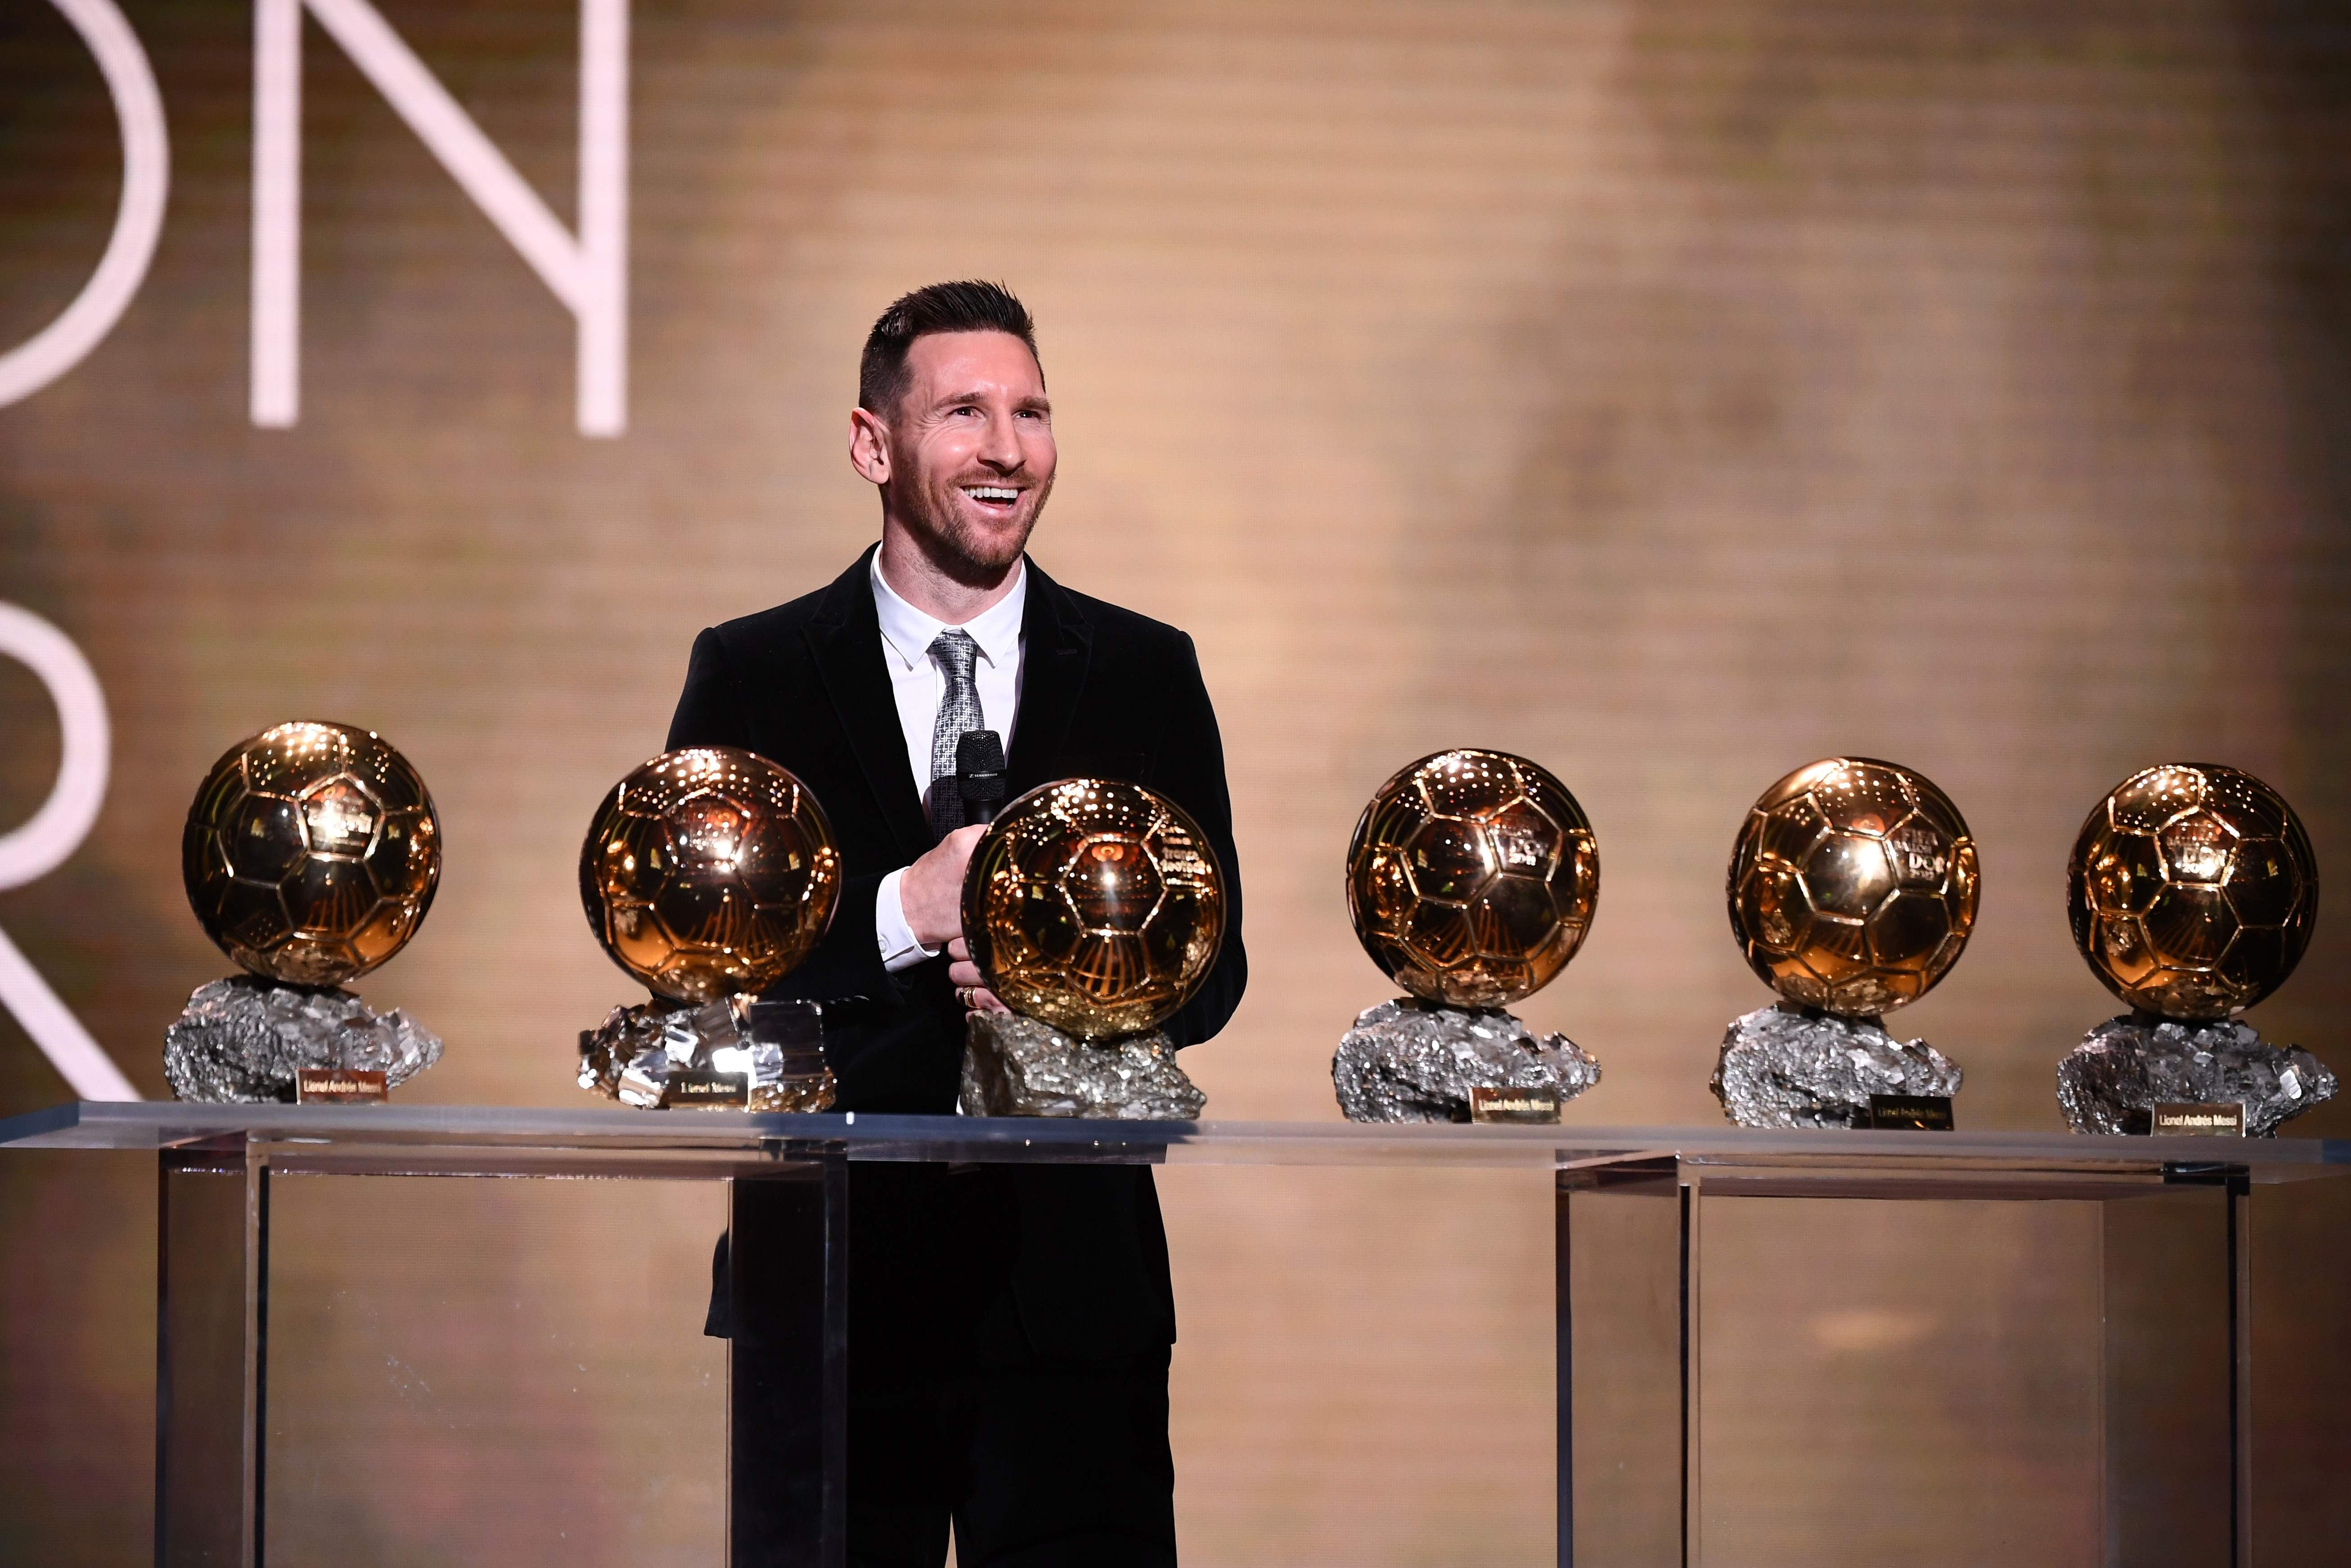 El delantero argentino Lionel Messi obtuvo su sexto Balón de Oro, galardón que corona al mejor jugador del mundo. (Foto Prensa Libre: AFP)